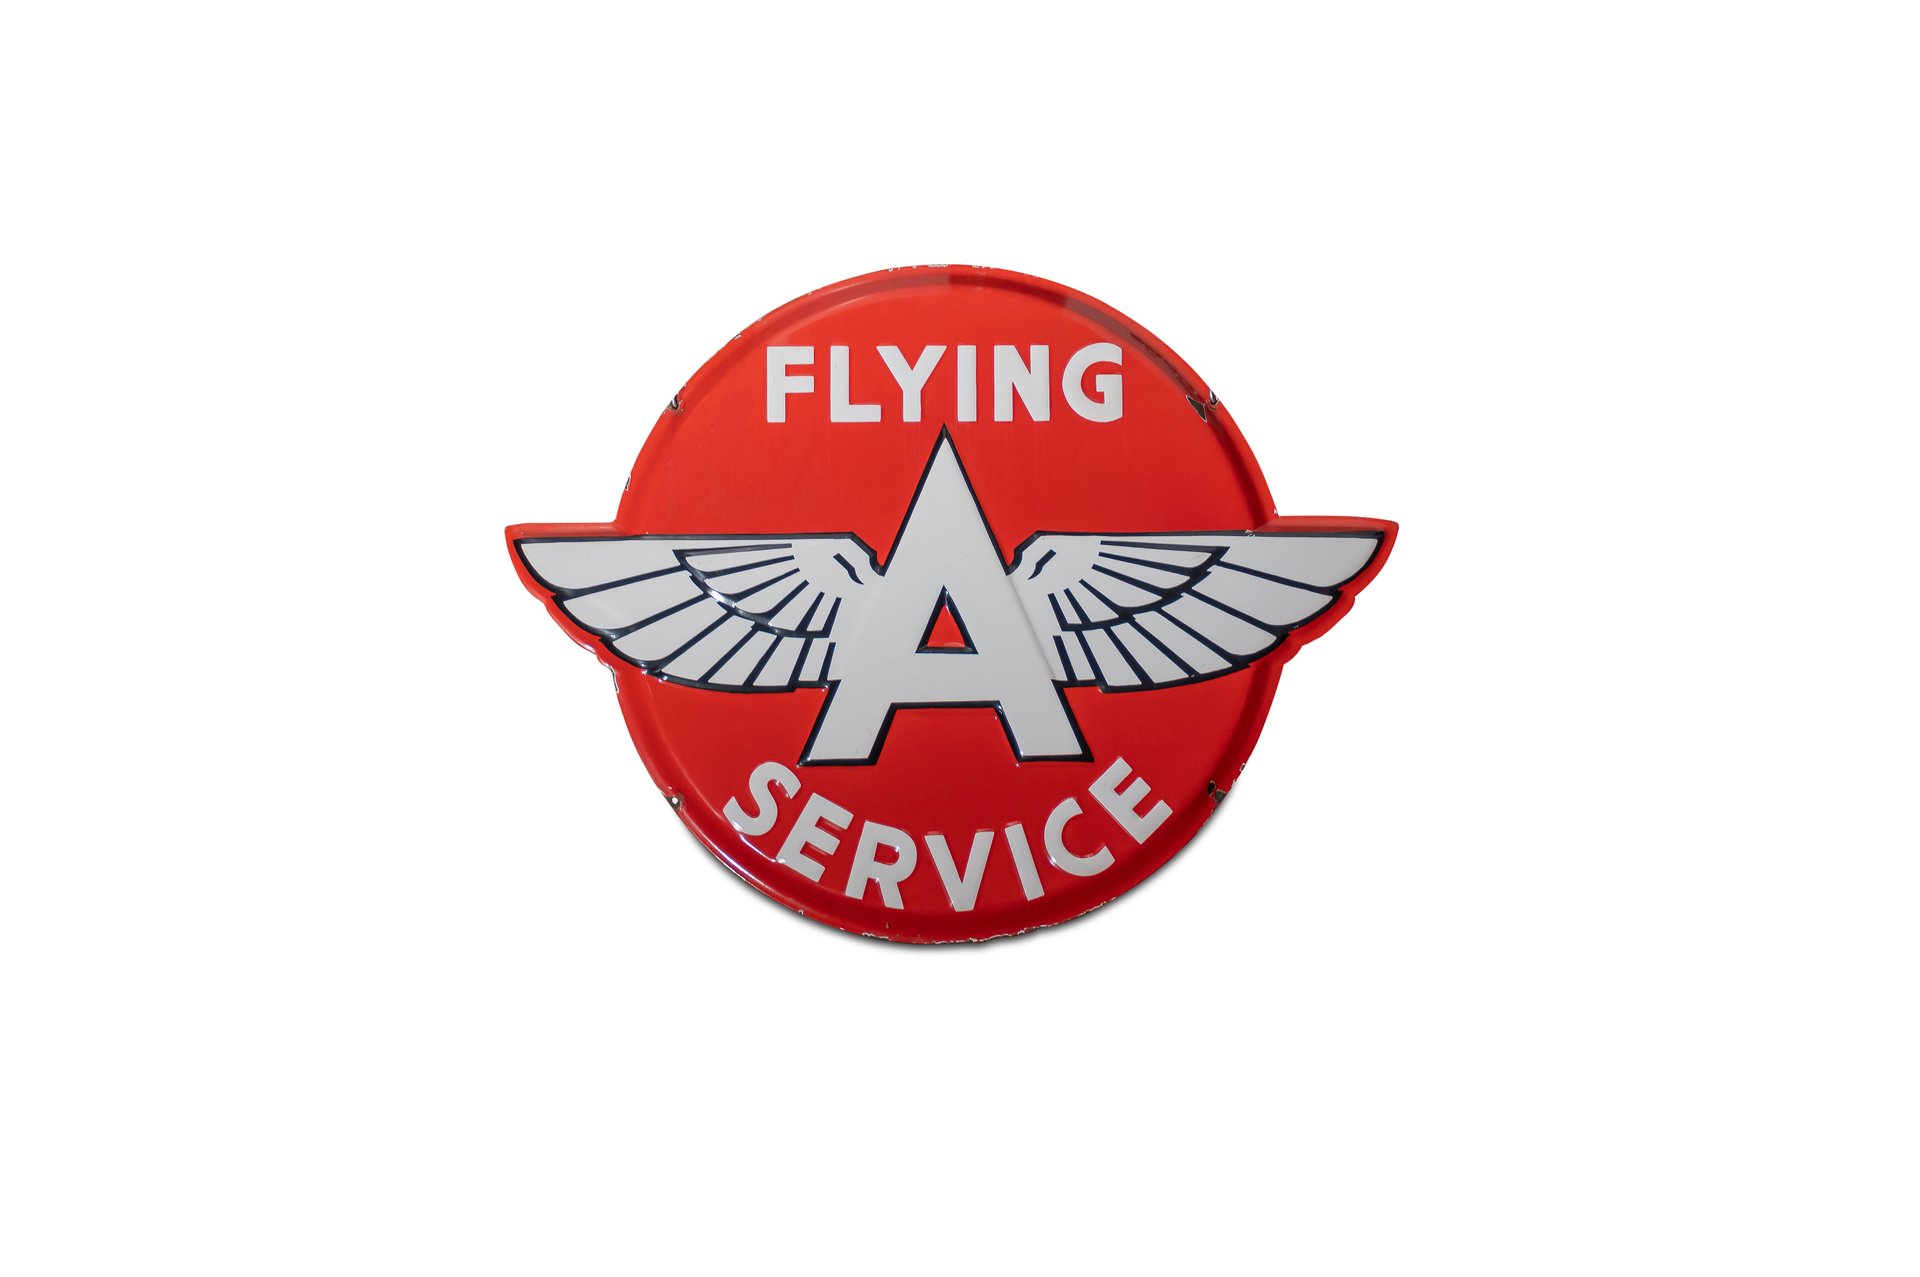 For Sale 'Flying A Service' Porcelain Sign